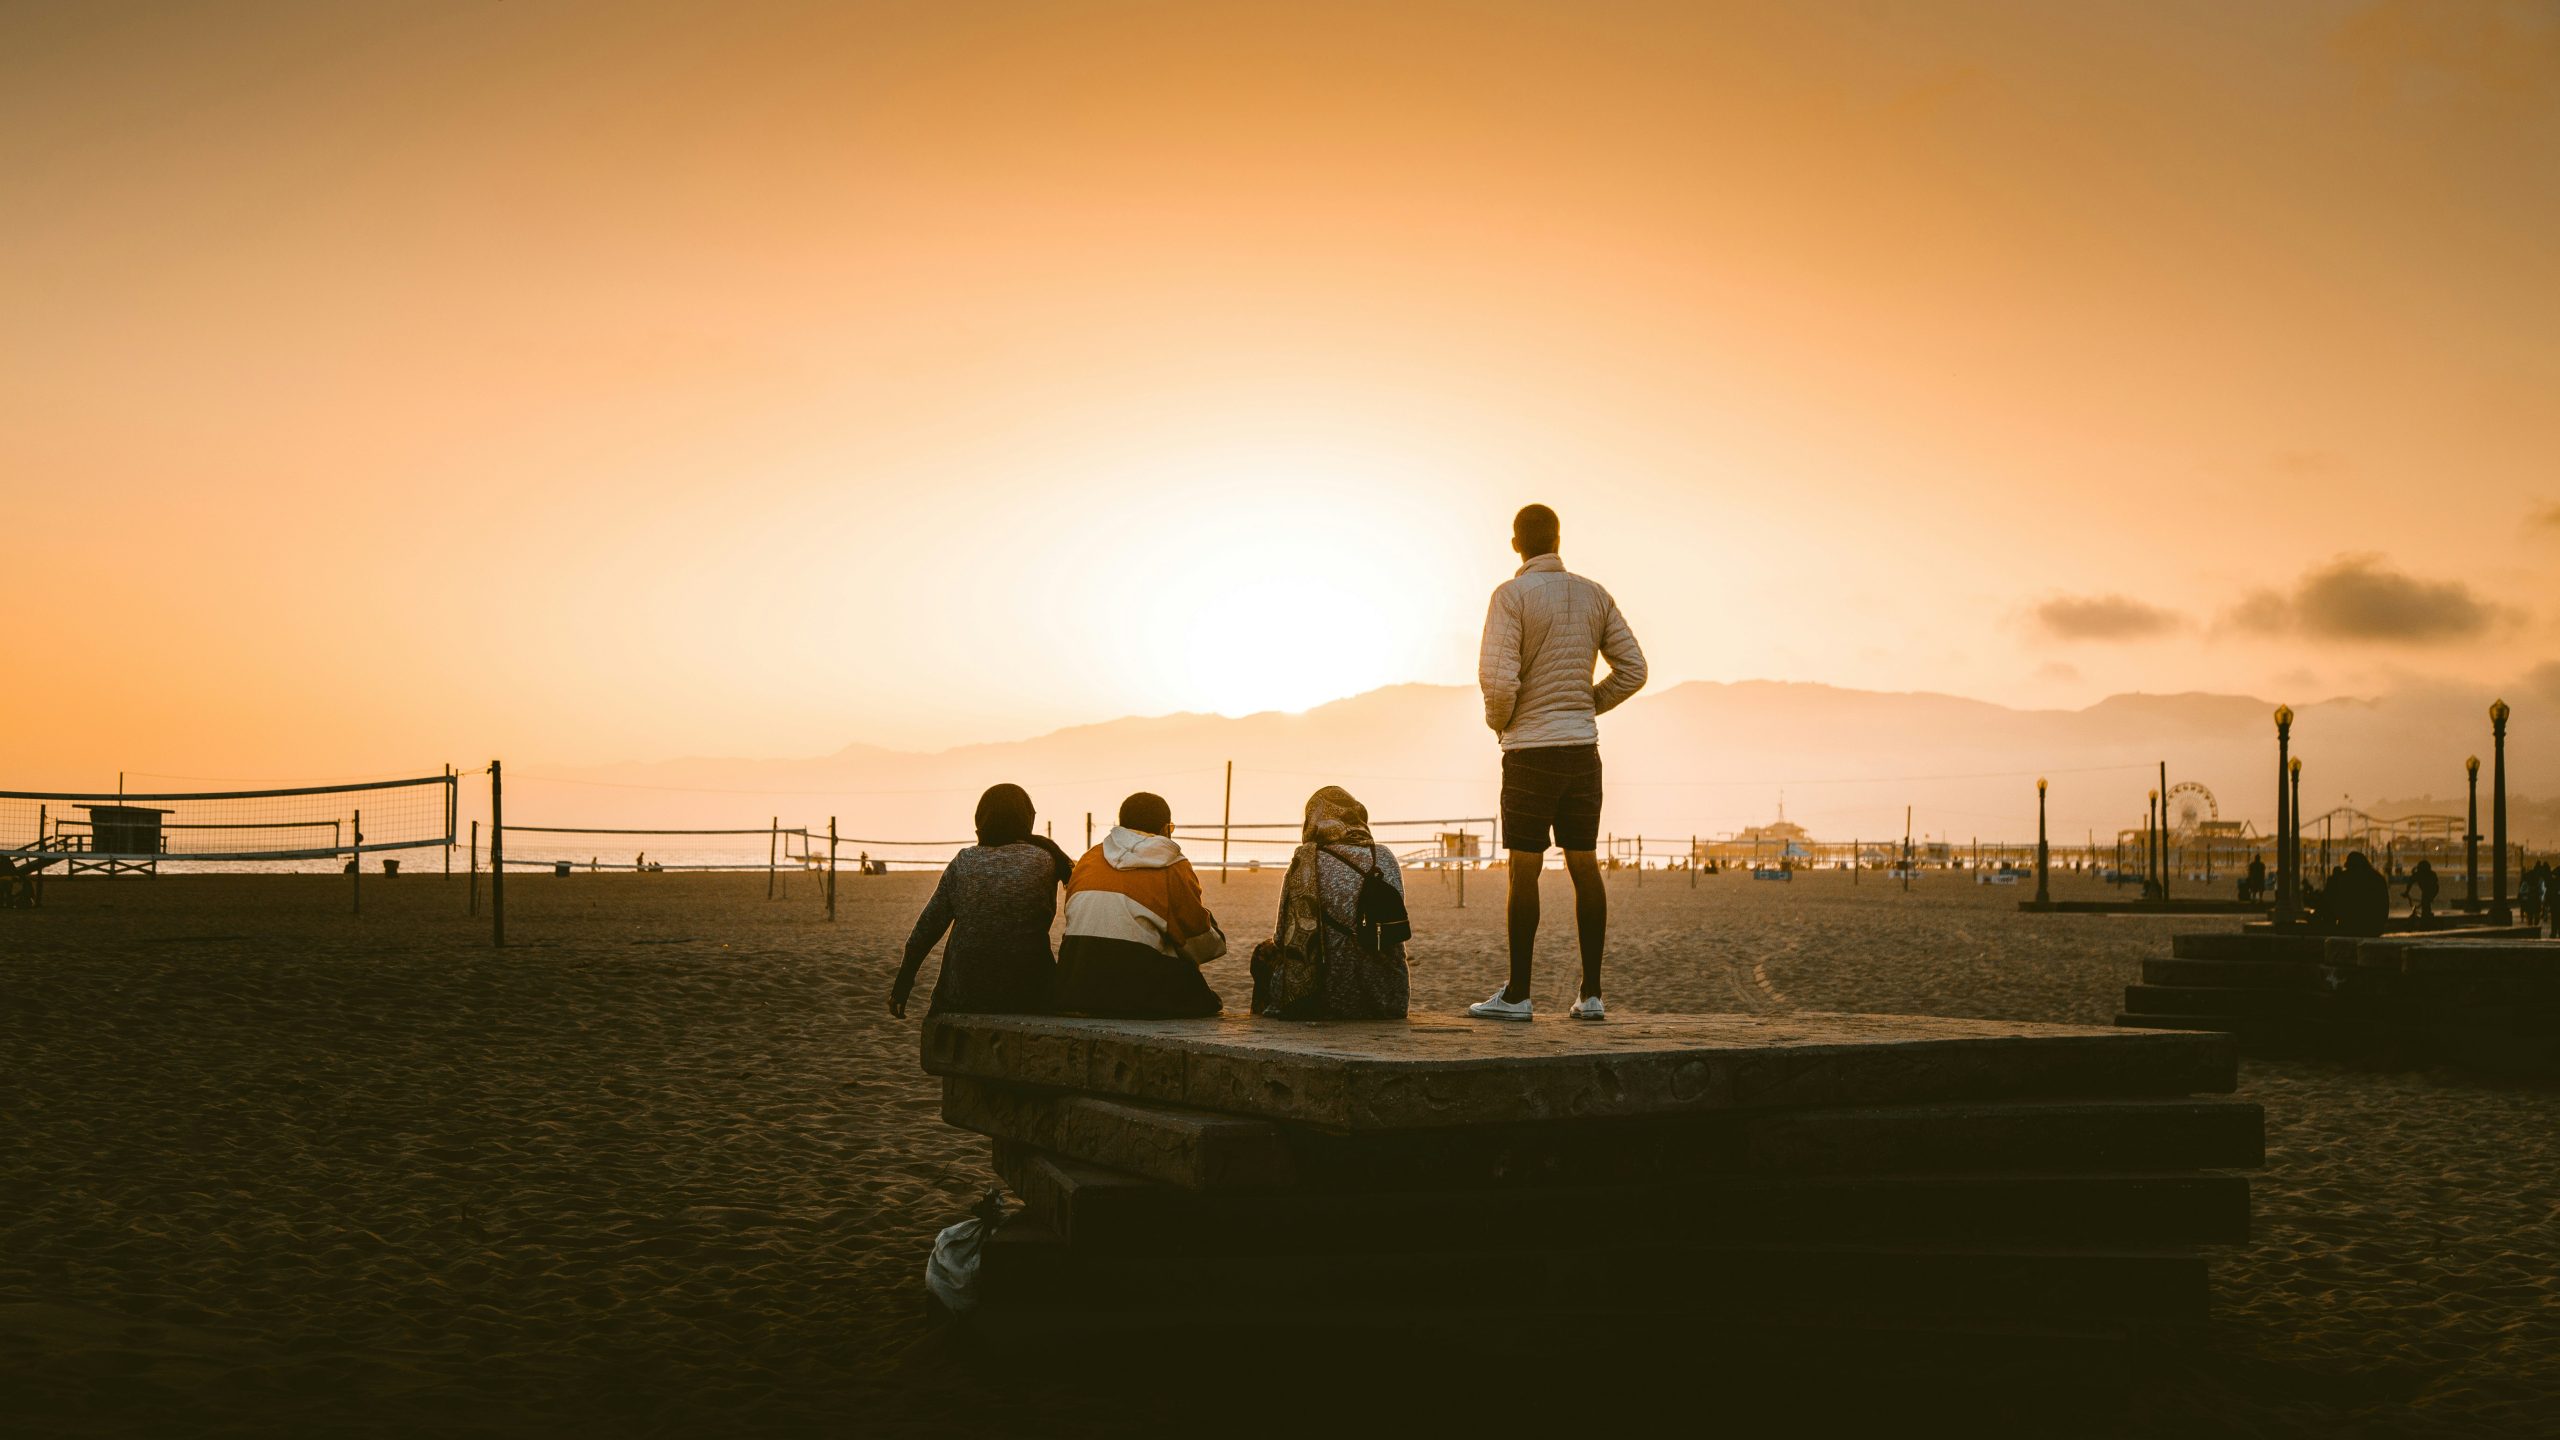 Neljä ihmistä katsoo kohti laskevaa aurinkoa hiekkarannalla. Taustalla näkyy rantalentopalloverkkoja ja huvipuistolaitteita. Kuvassa on lähes seepian värinen sävytys.